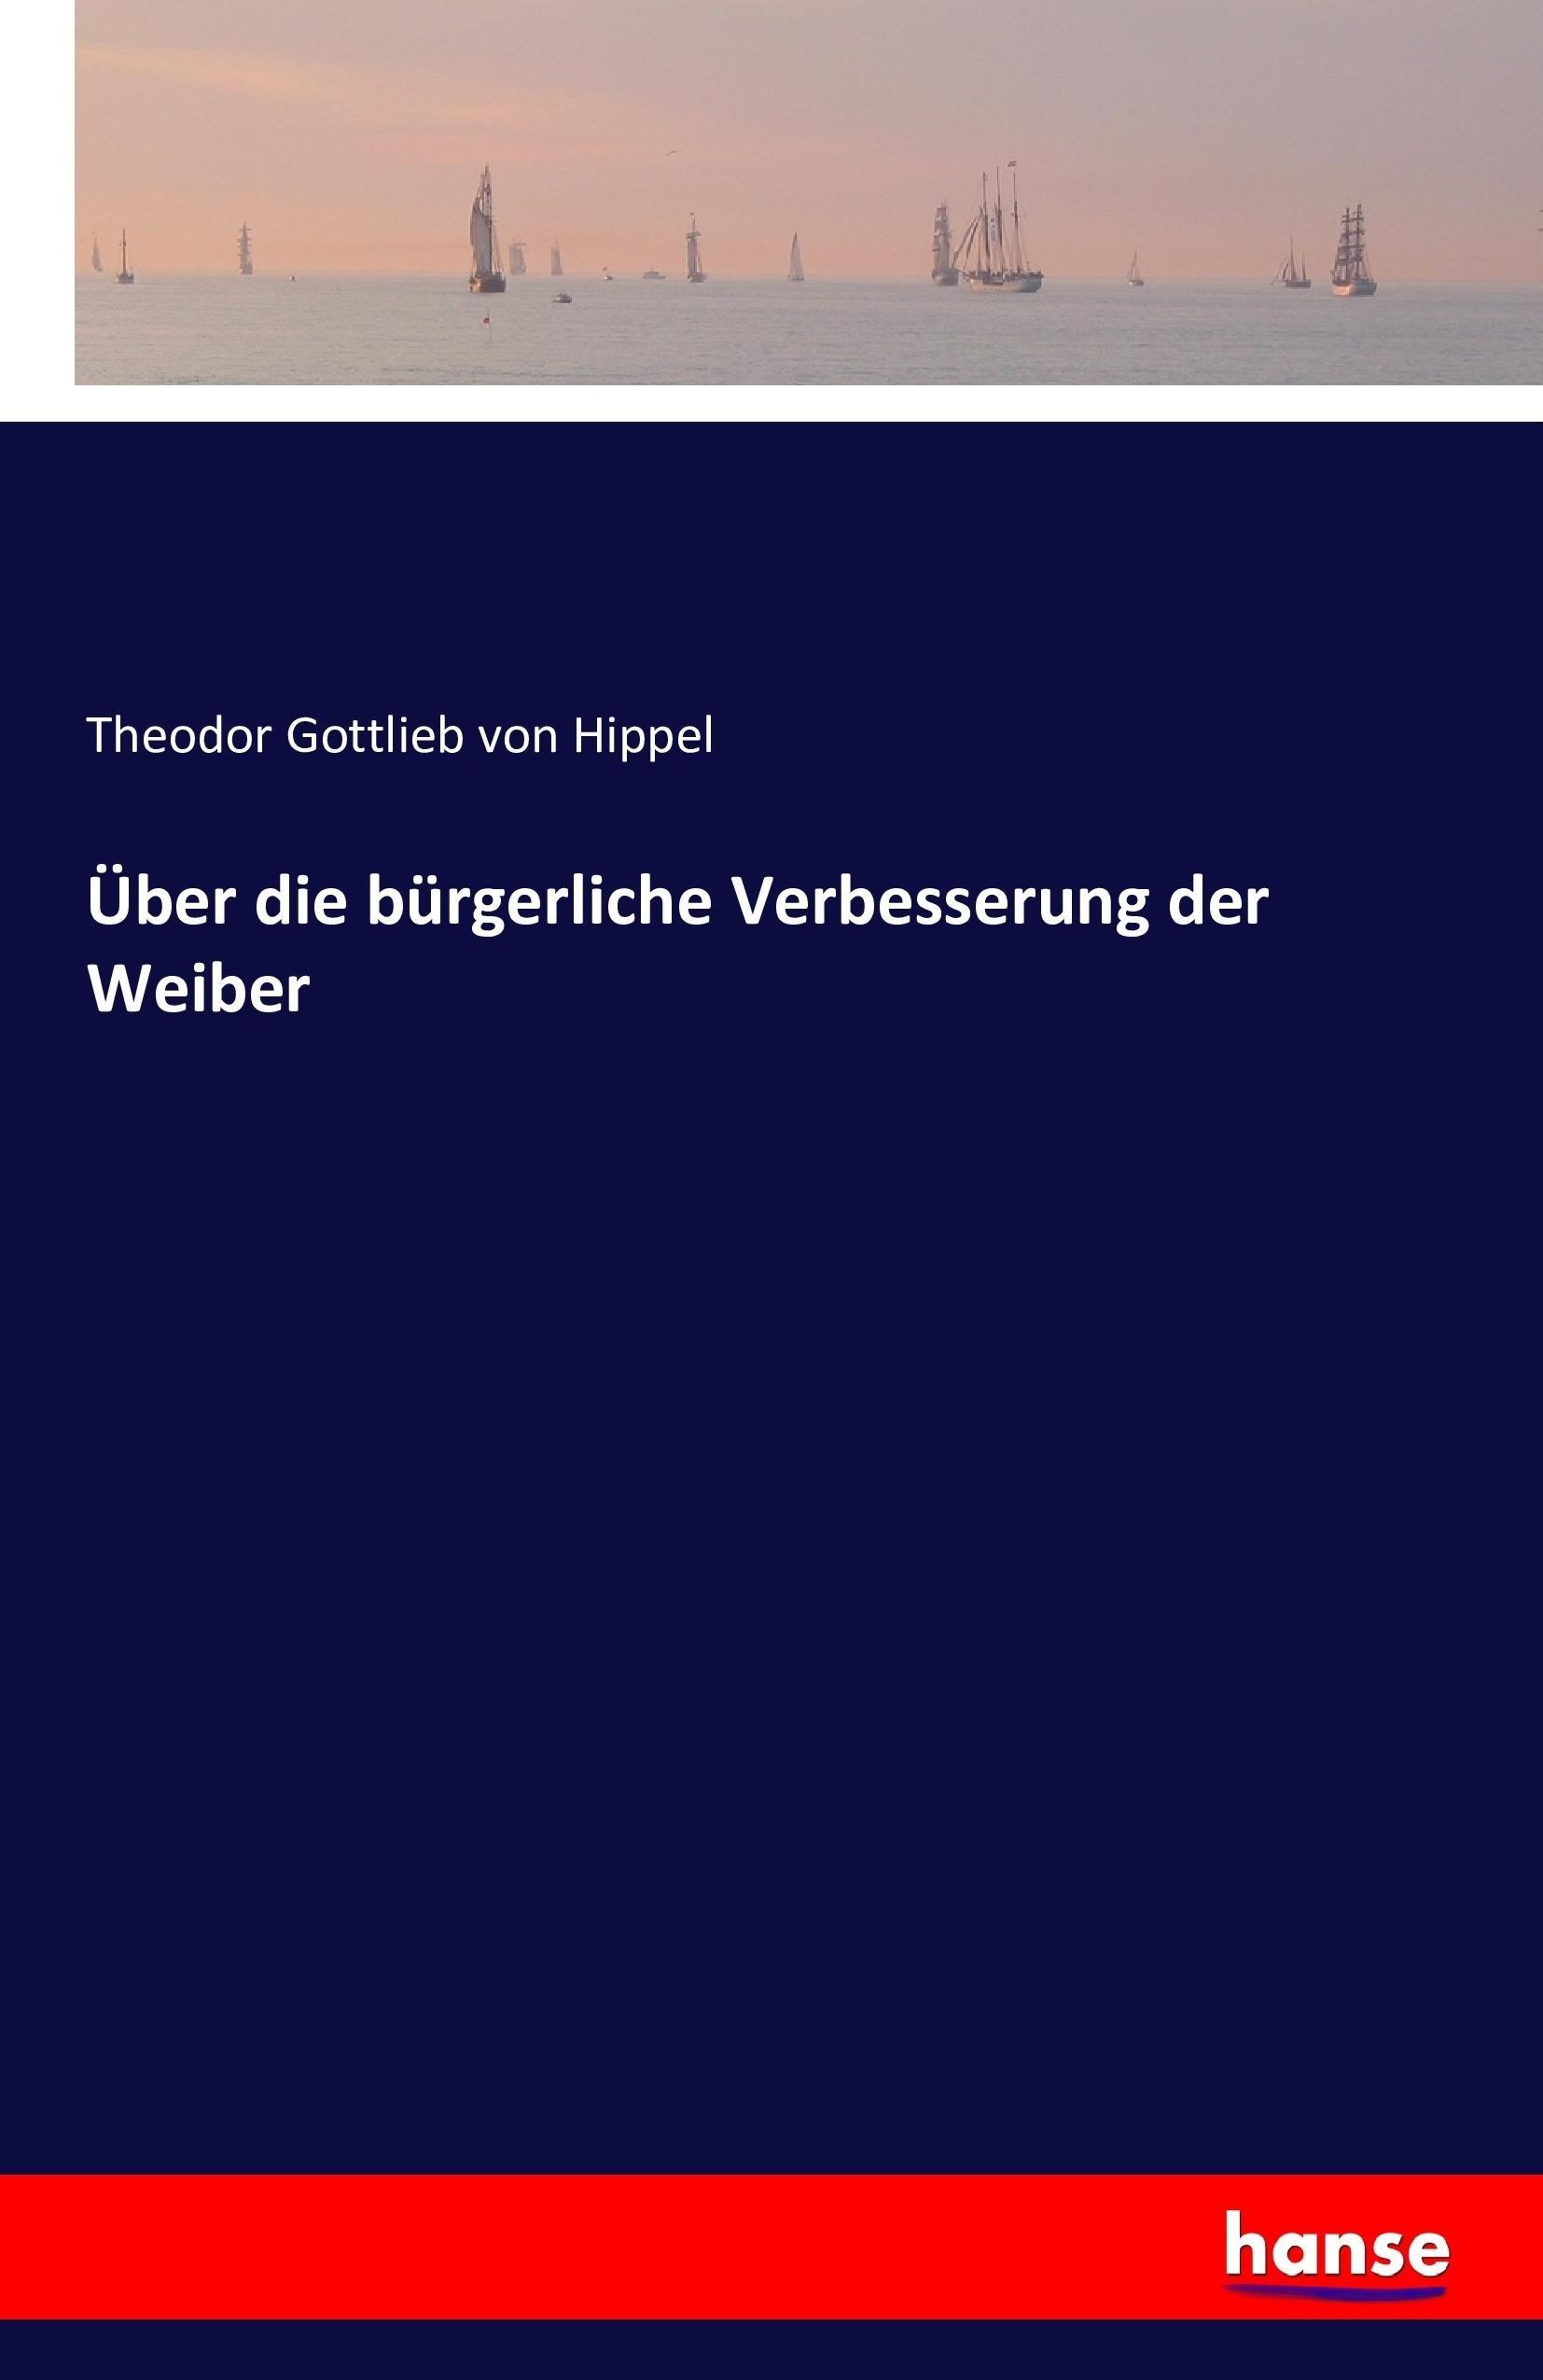 Ueber Die Buergerliche Verbesserung der Weiber - Hippel, Theodor Gottlieb von